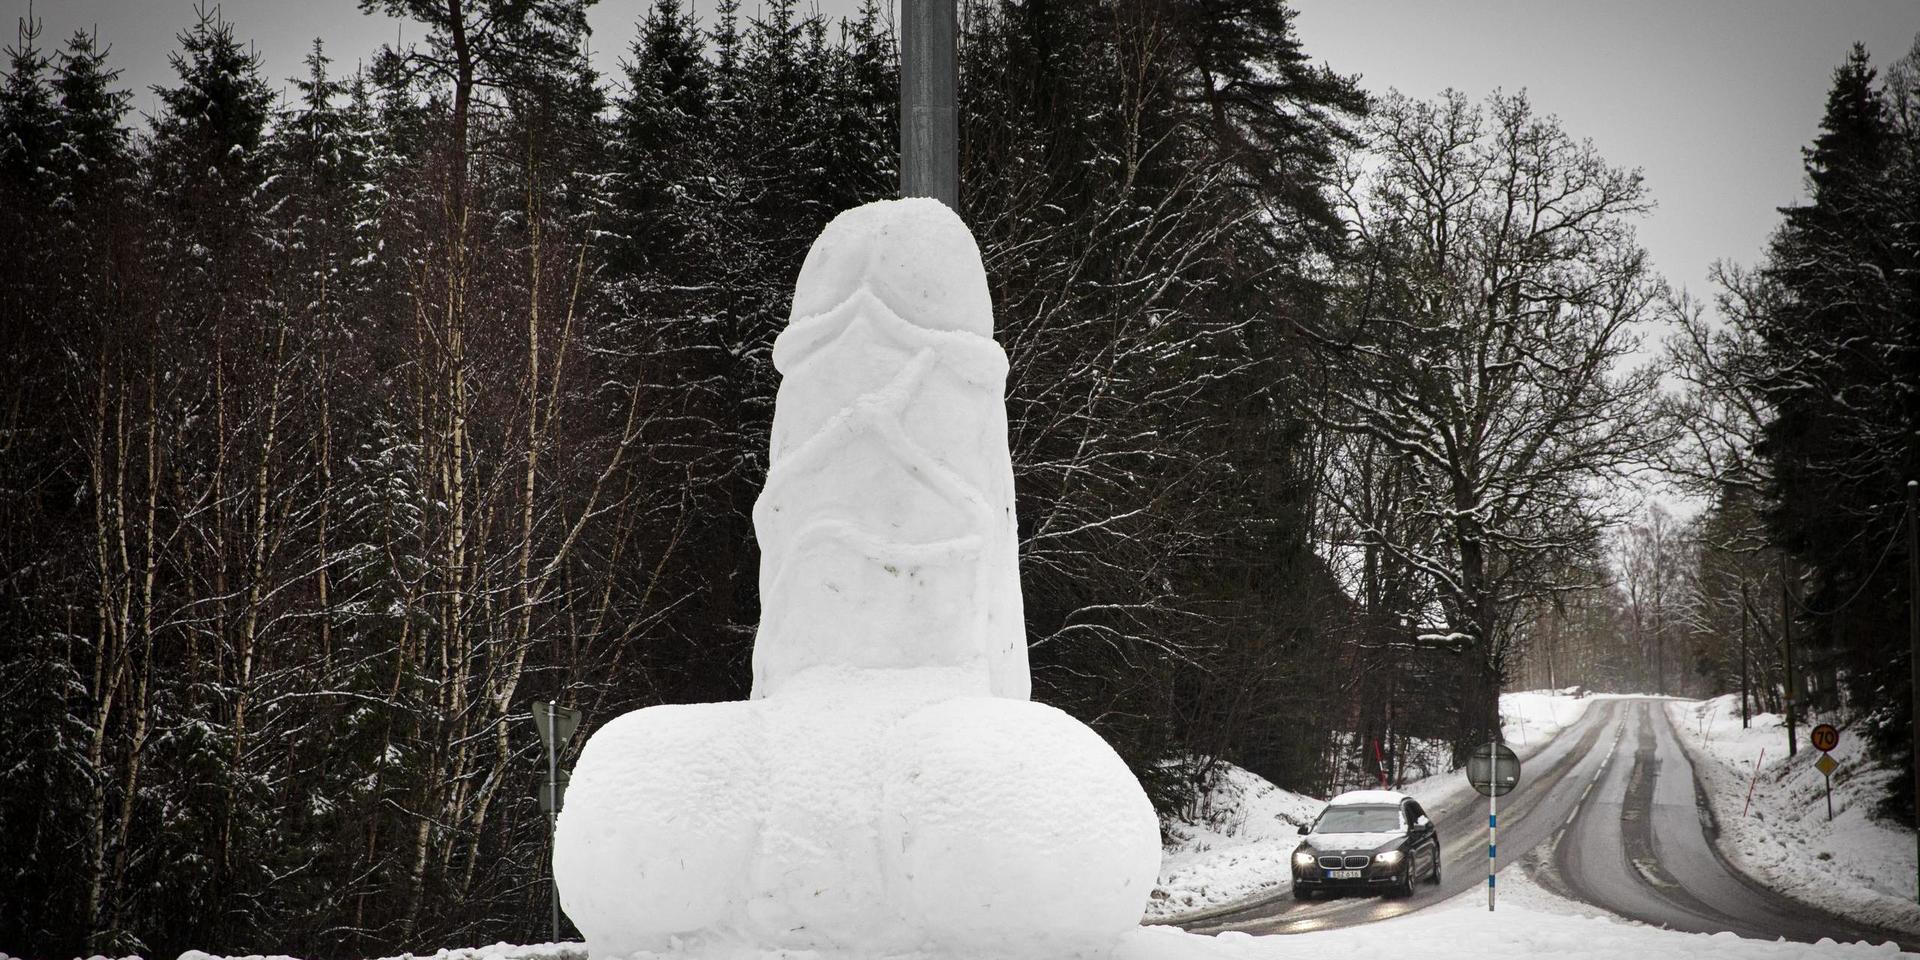 I en rondell utanför Borås har någon byggt en stor penis av snö som står mot en lyktstolpe. 